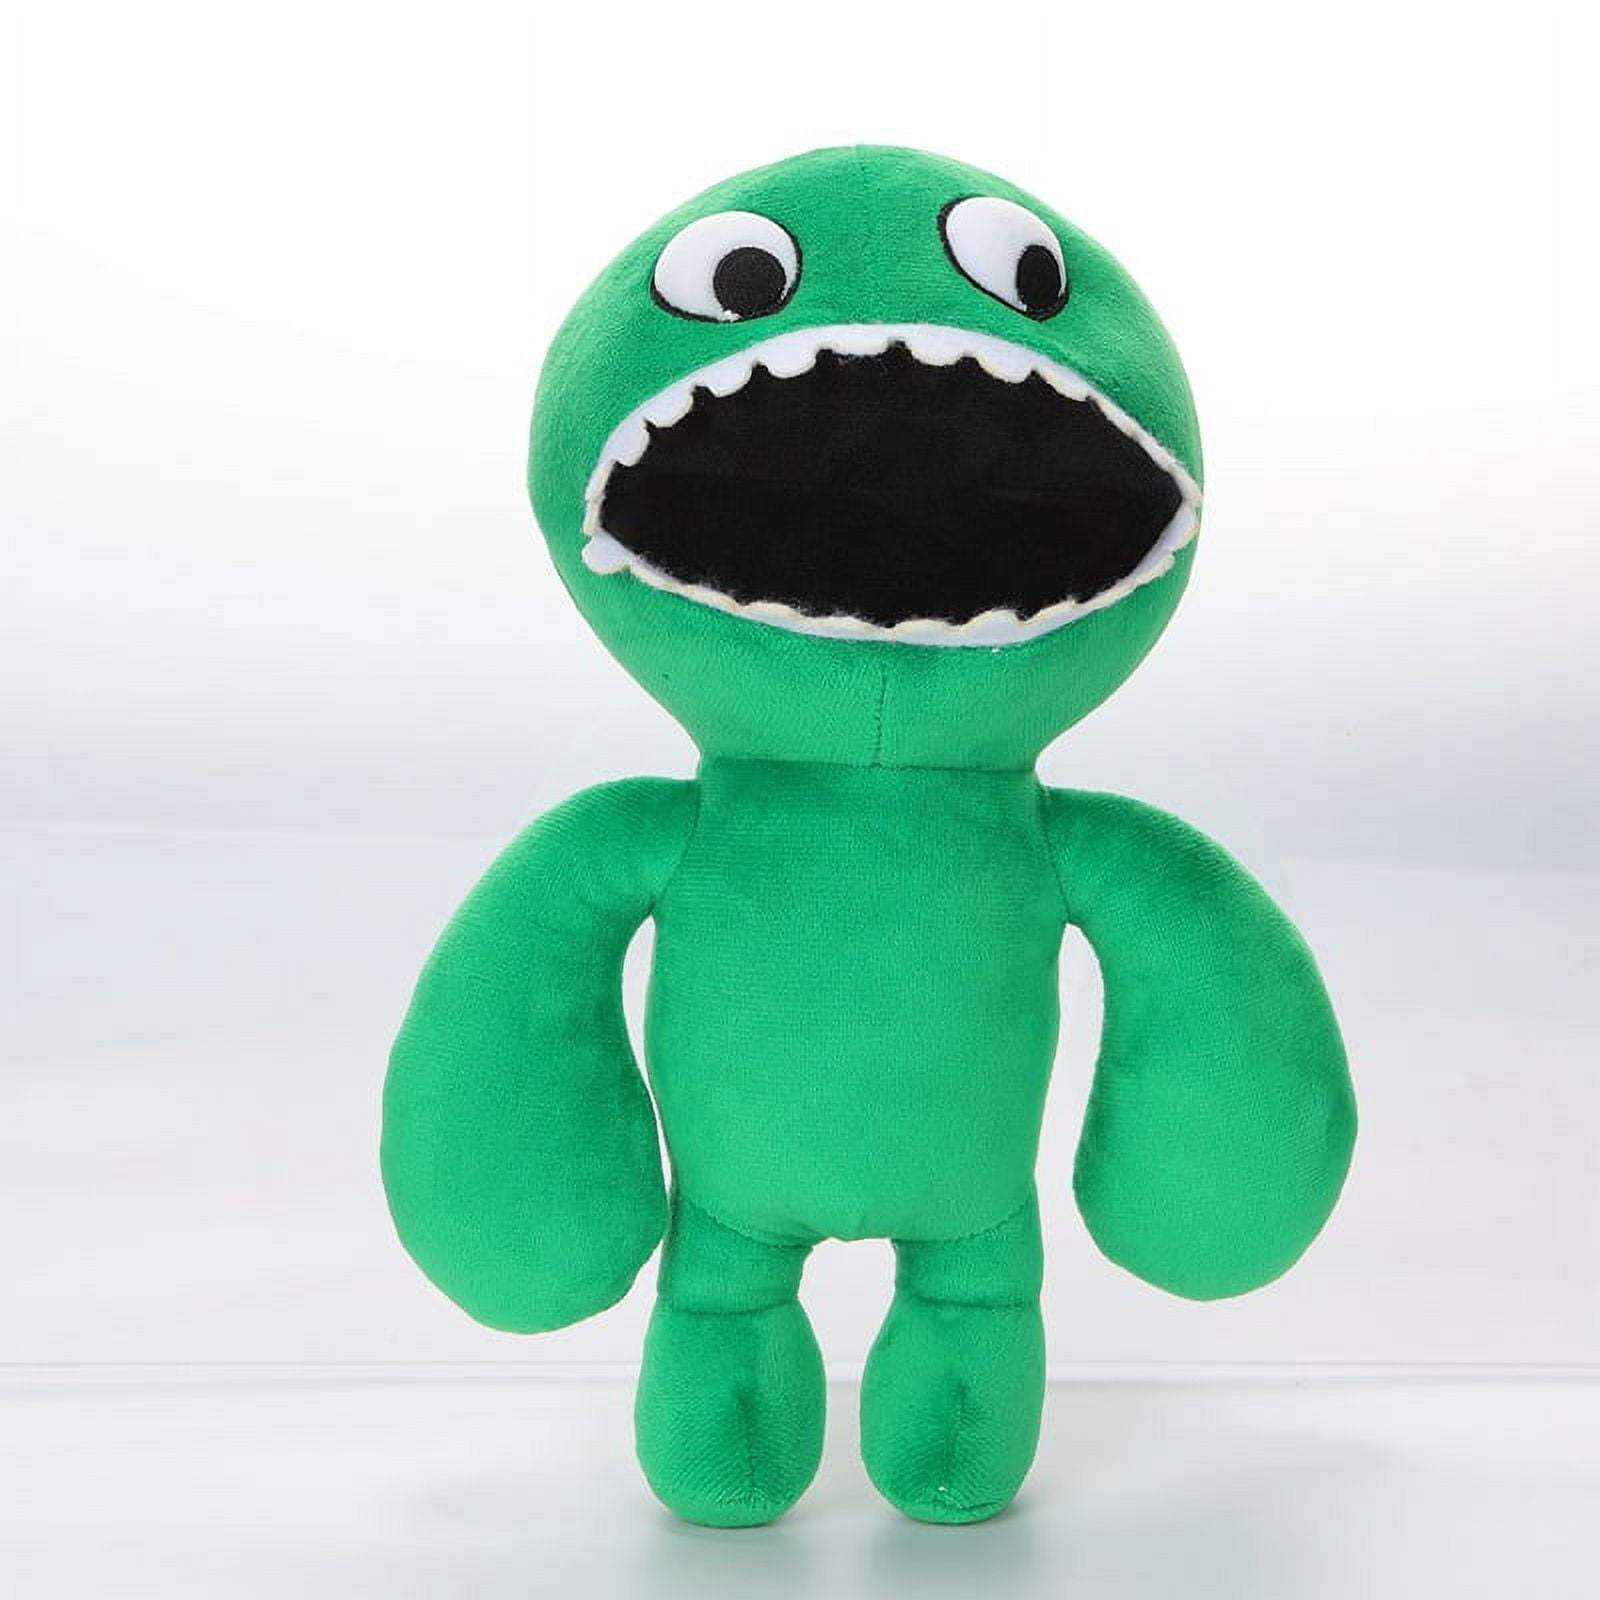 New Plush Garten of Banban Toys Doll Cartoon Stuffed Monster